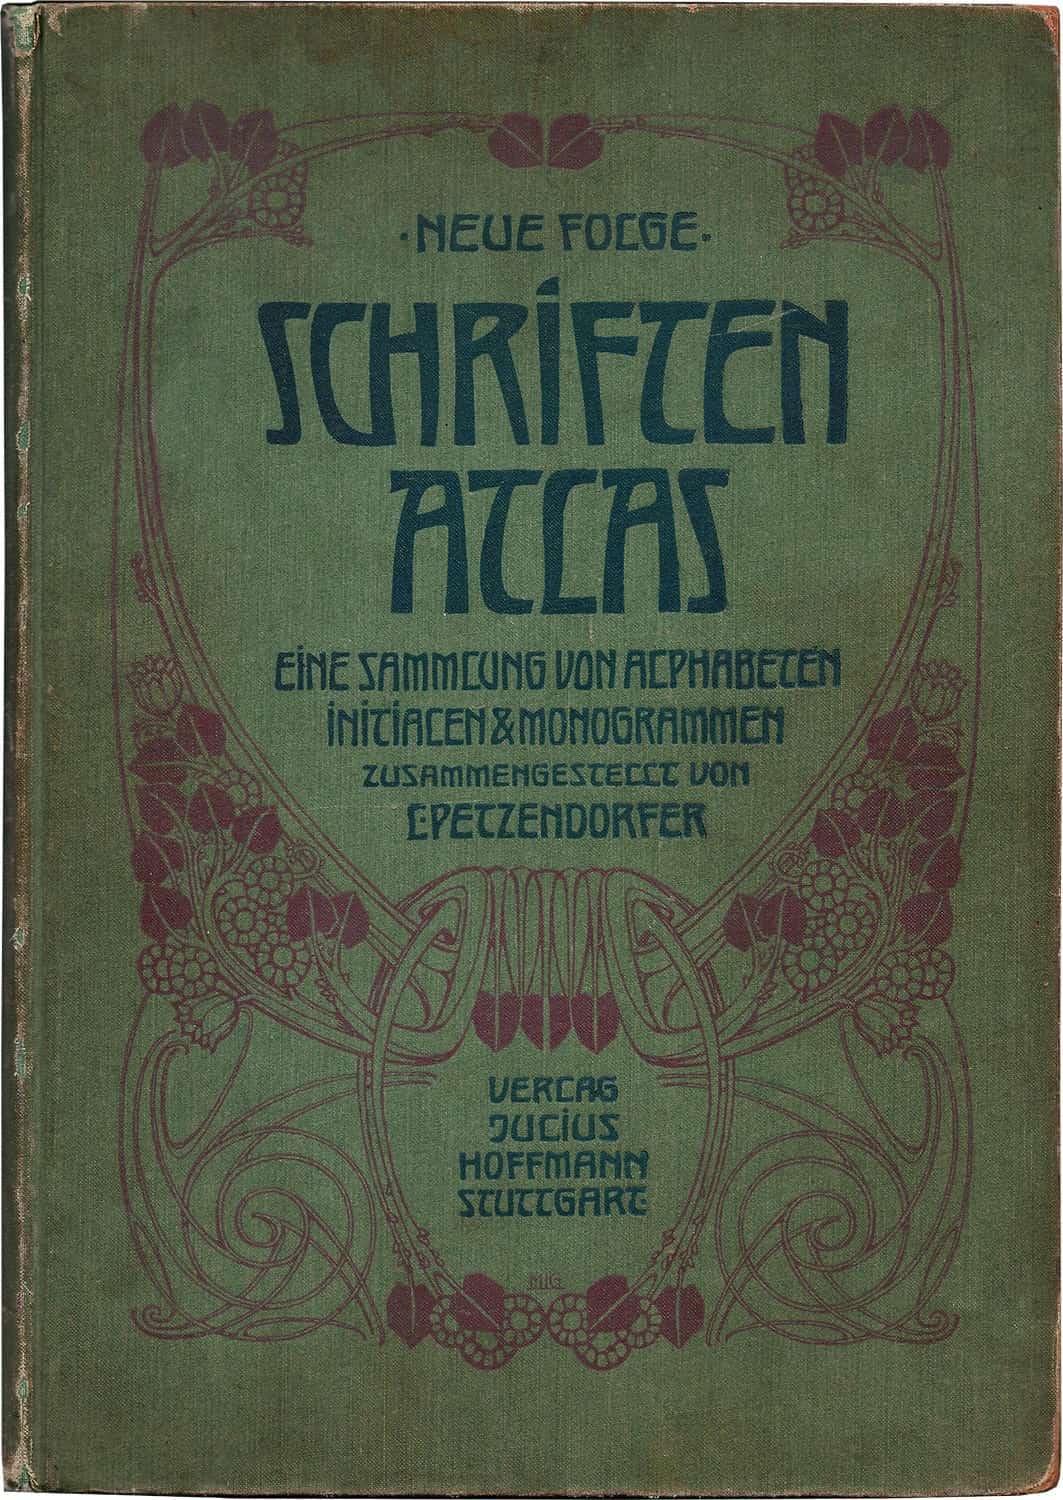 Schriften Atlas